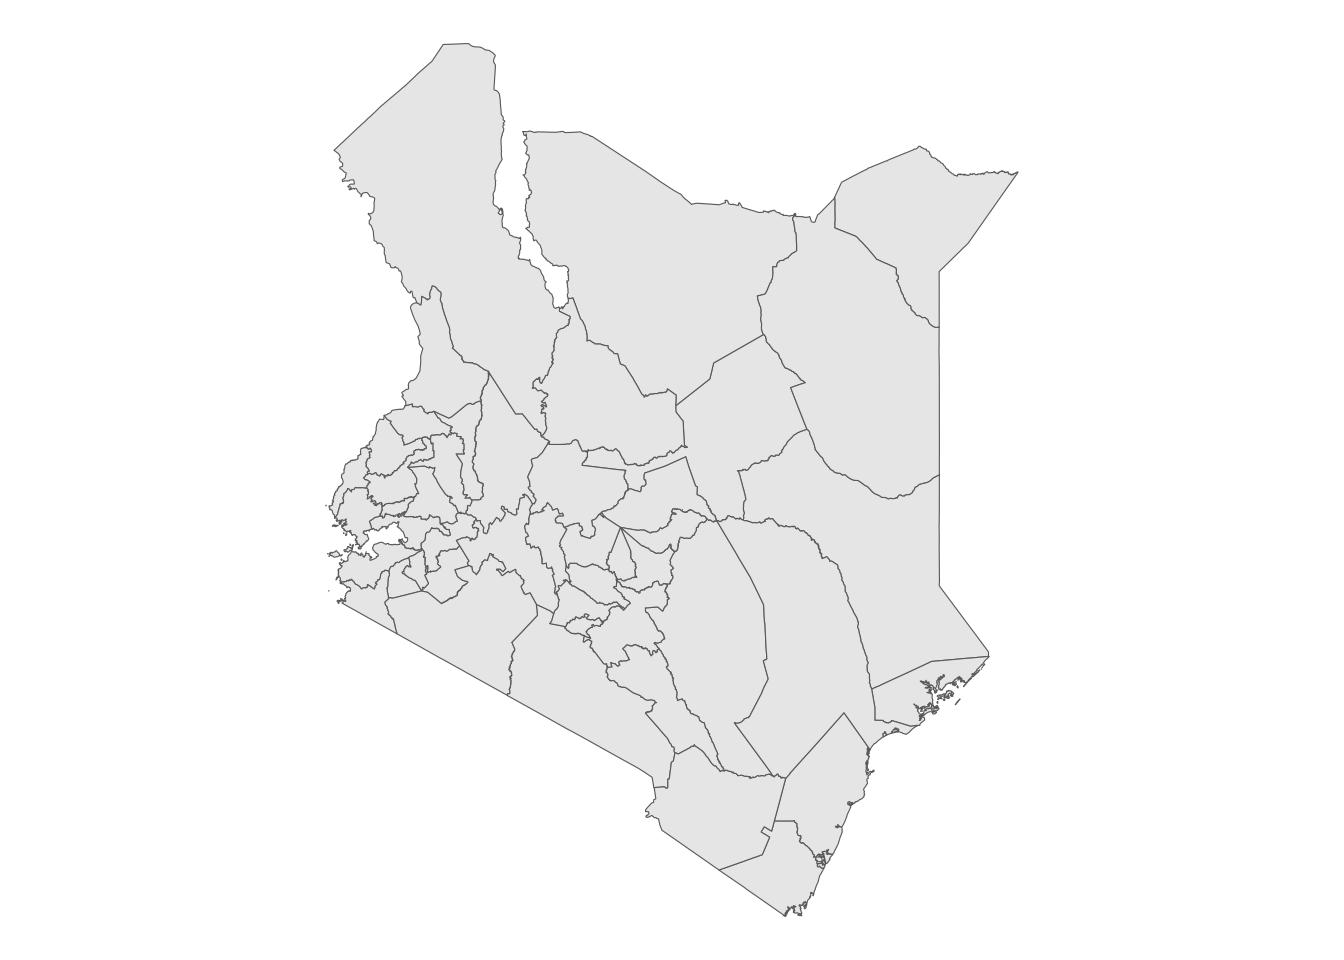 ggplot2 map of Kenya county boundaries